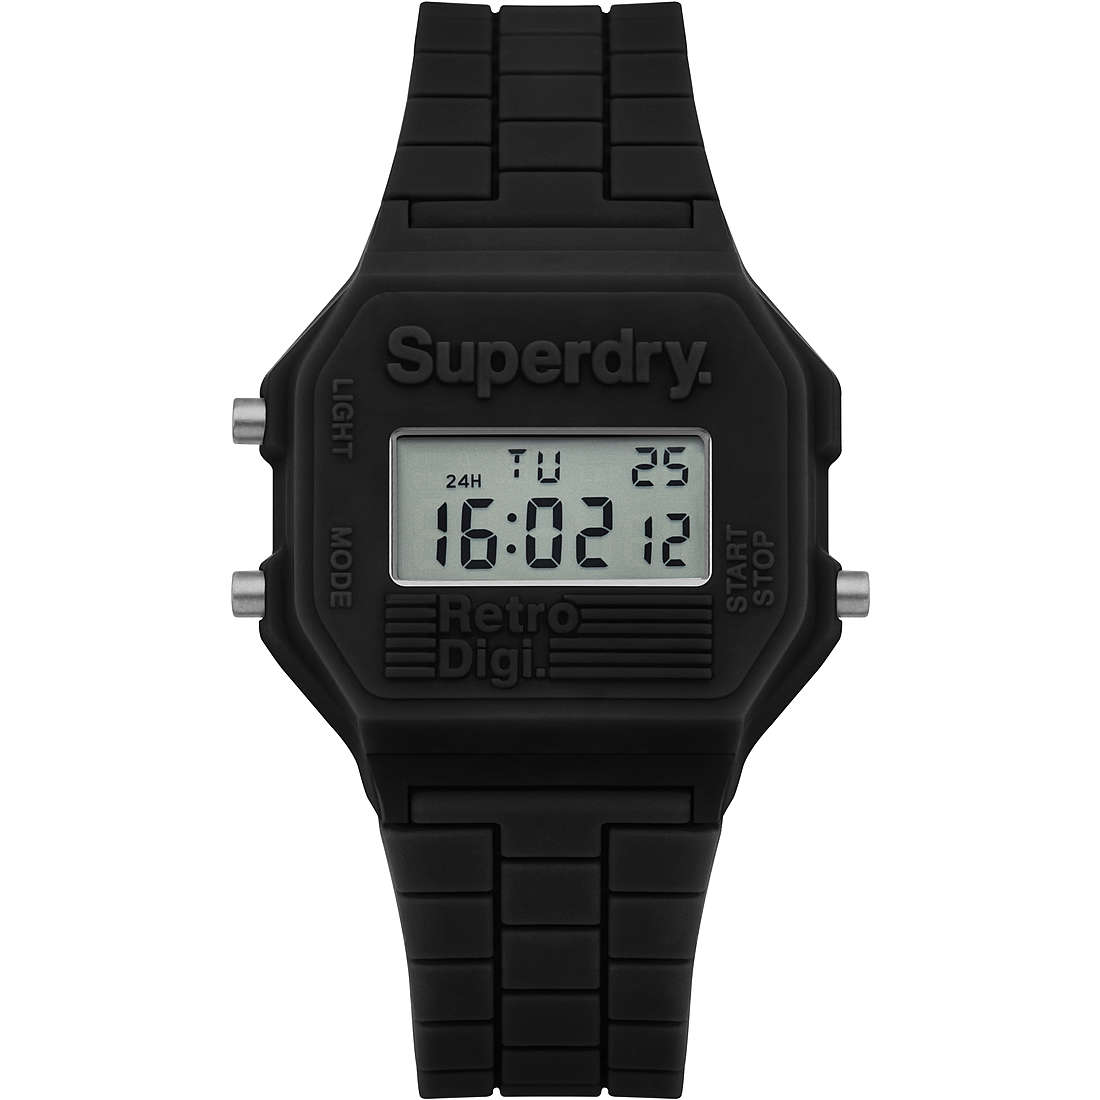 orologio digitale donna Superdry Retro Digi - SYL201B SYL201B